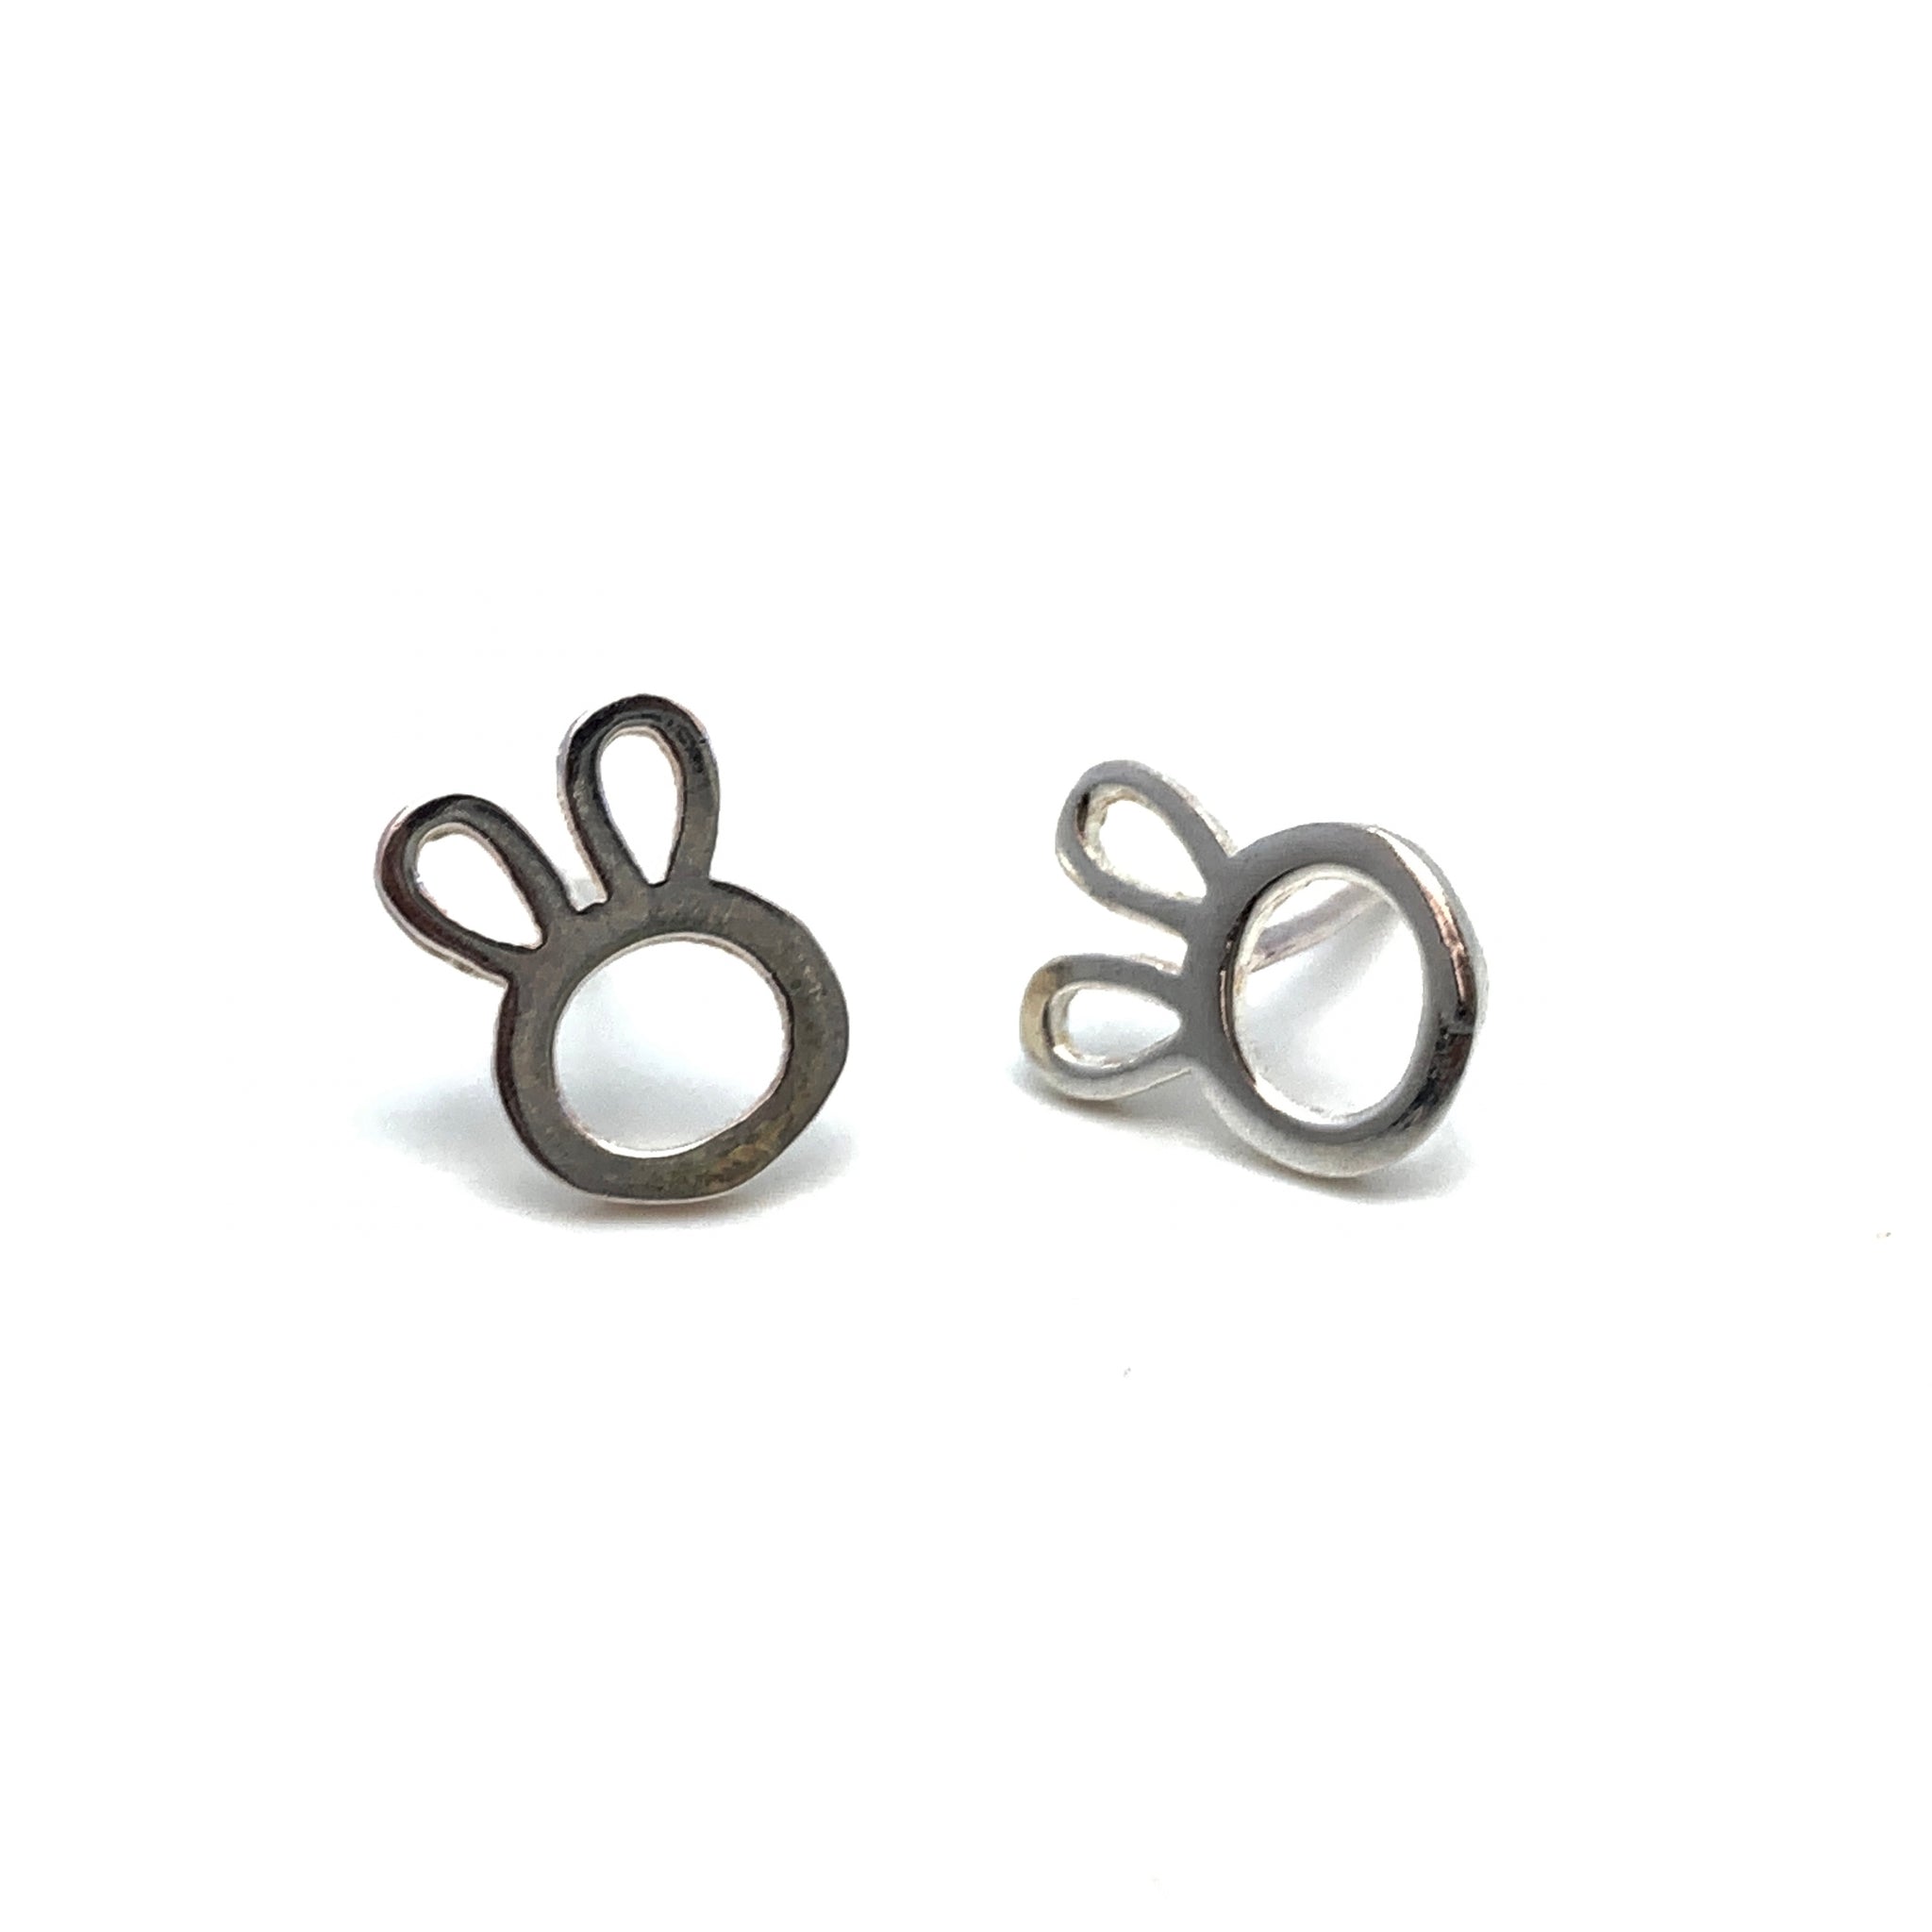 Bunny Silhouette Stud Earrings - Stone Heart 